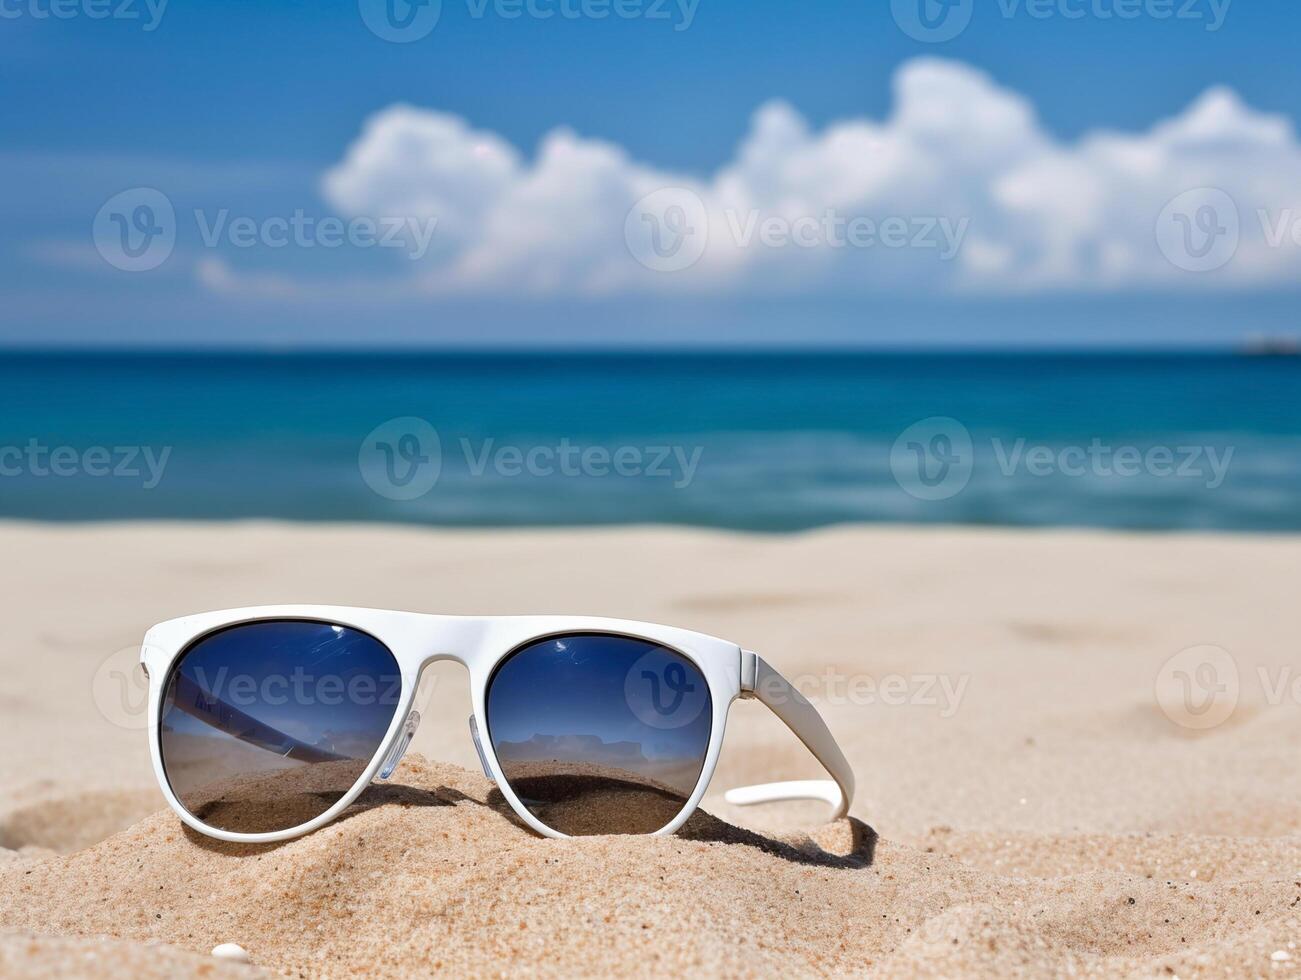 wit zonnebril resting Aan een zanderig strand met Doorzichtig blauw oceaan achtergrond. zomer vakantie concept foto